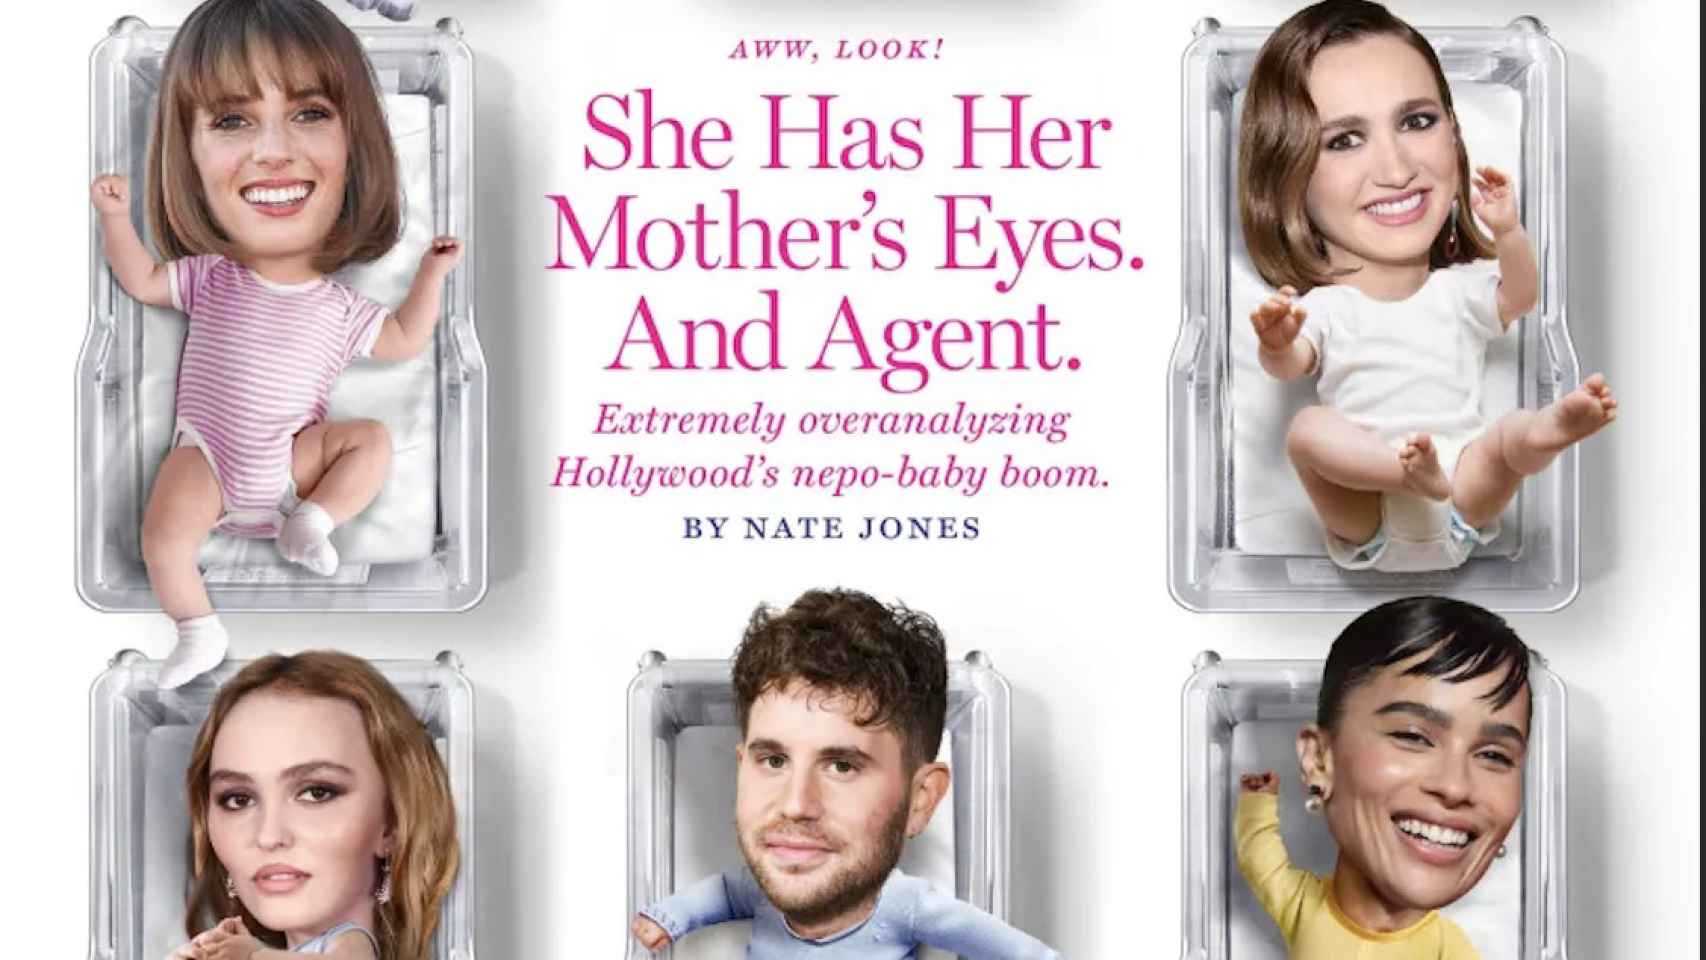 La portada de The New York con los nepo babies como tema central.